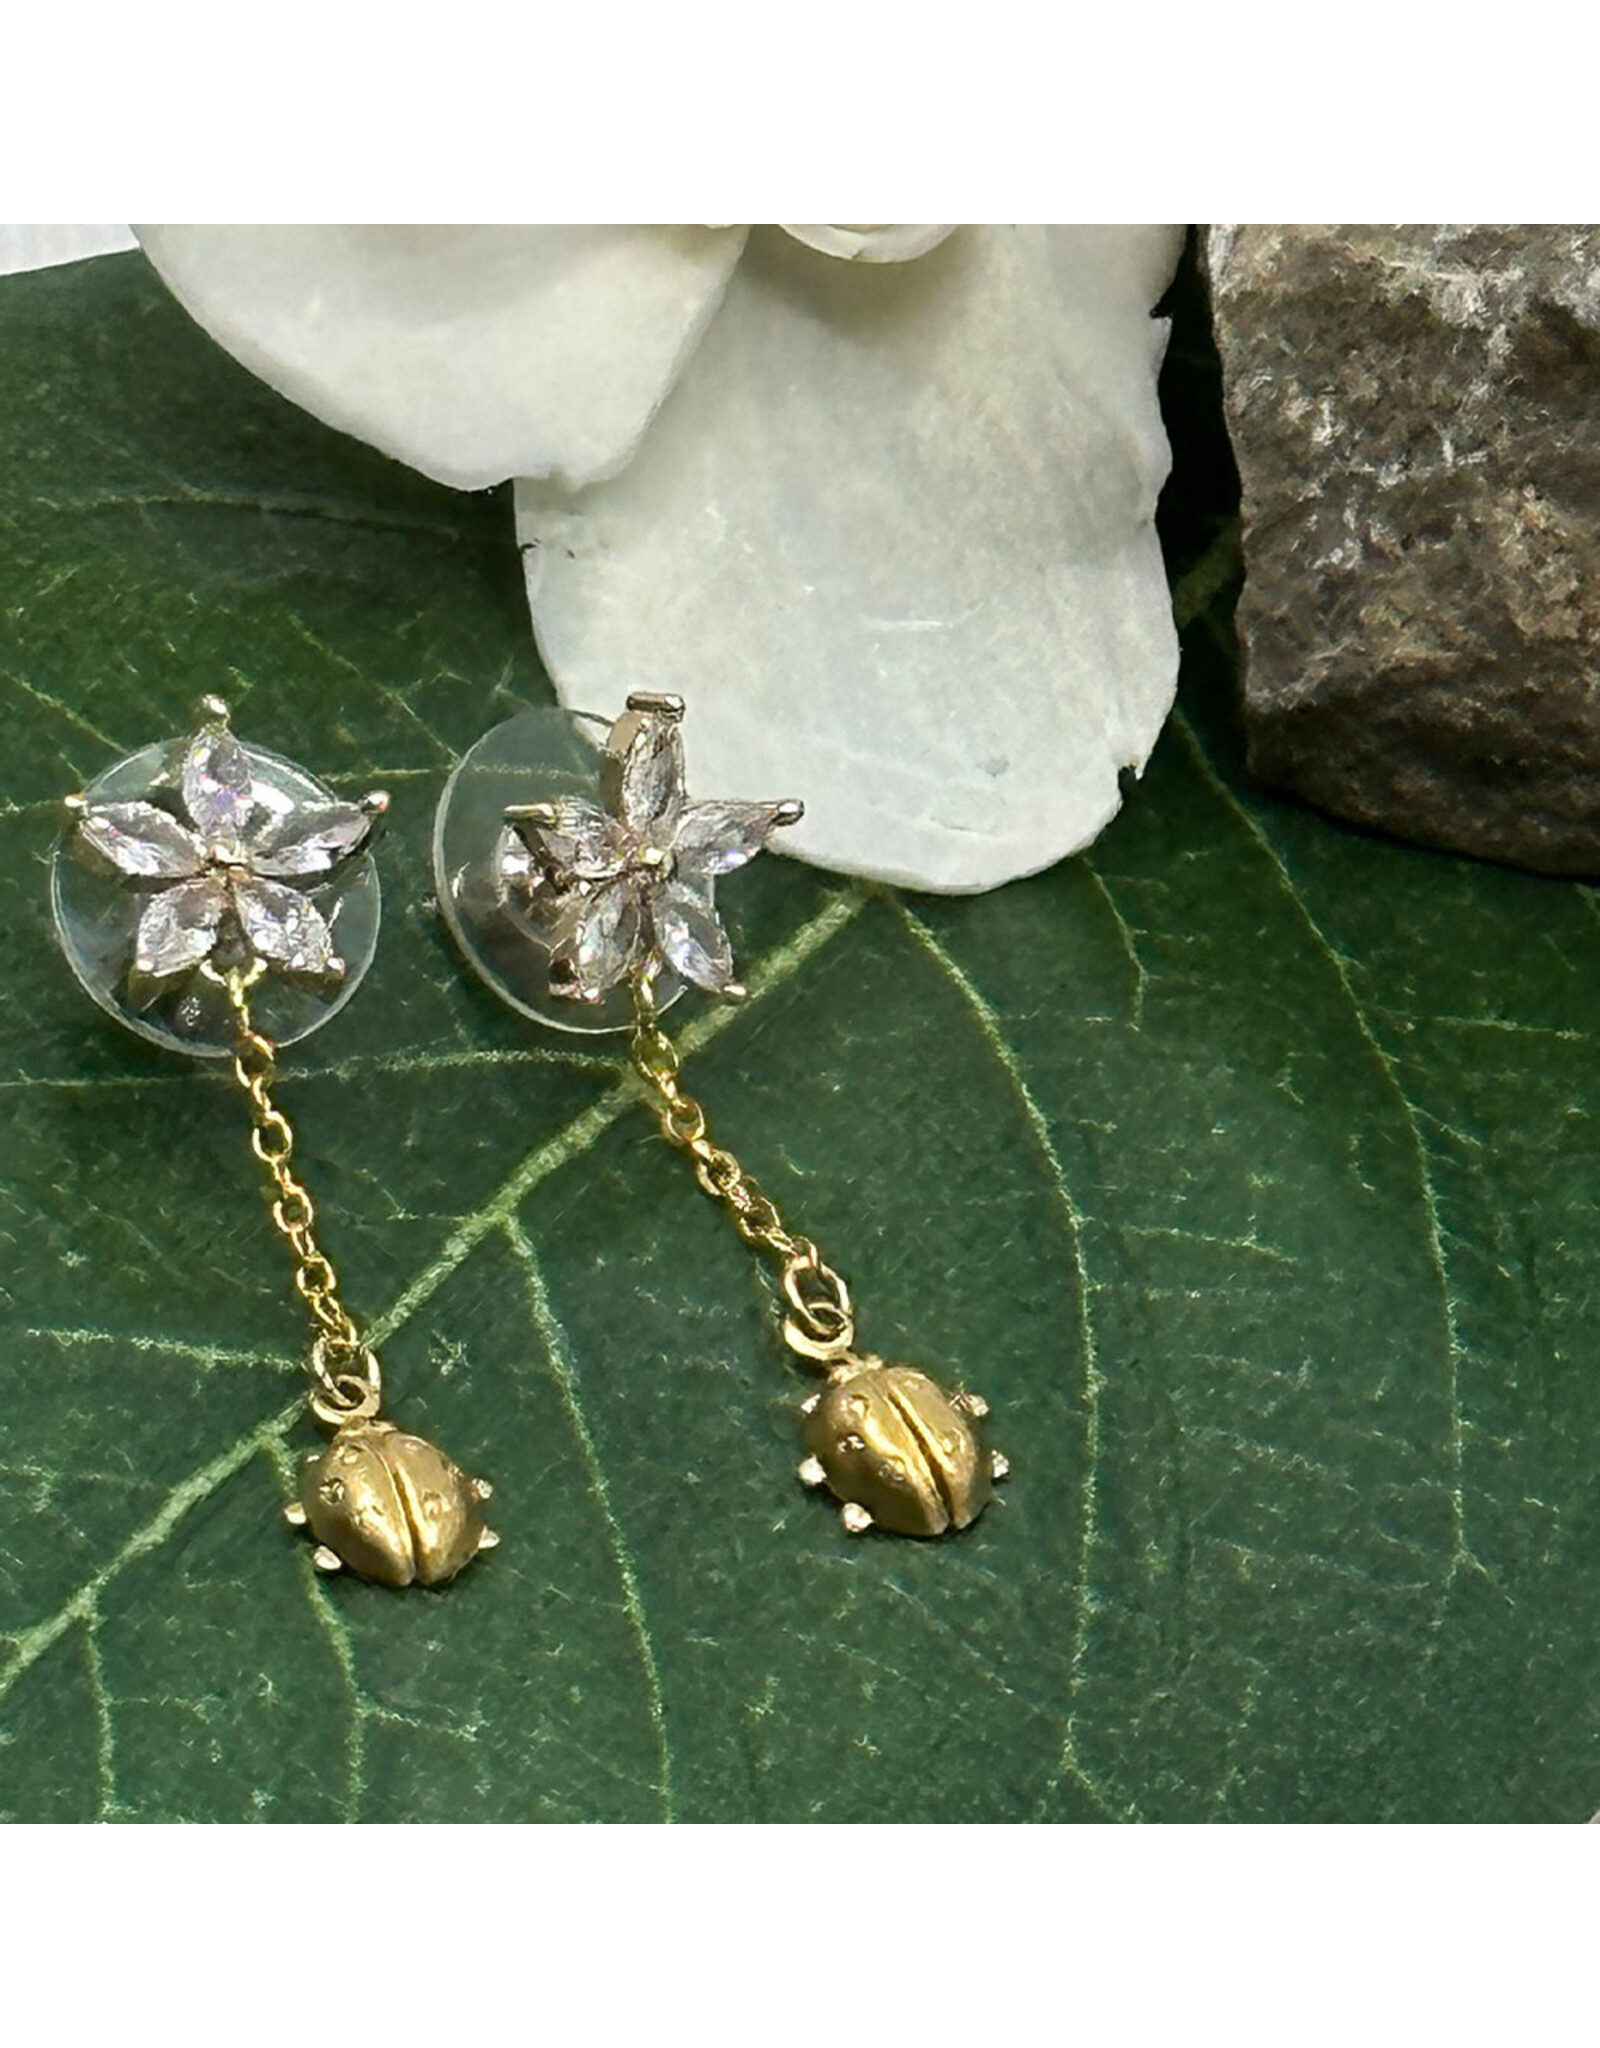 Sparkle Drop Earrings w Brass Ladybug